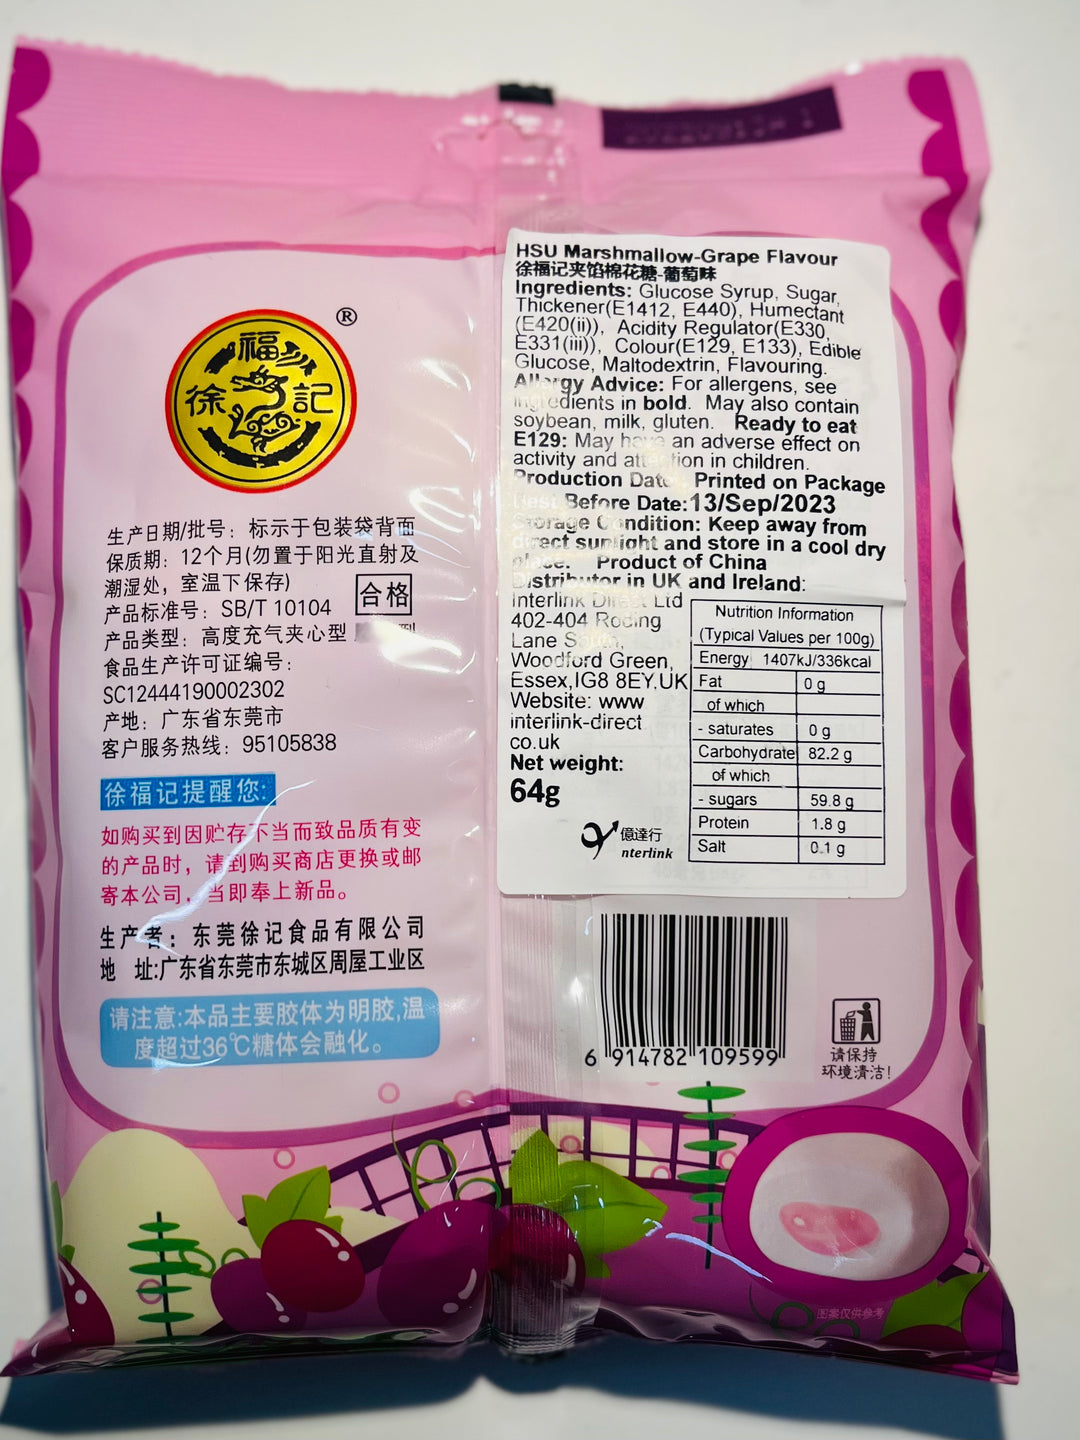 徐福记夹馅棉花糖葡萄味64g HSU Marshmallow Grape flavour